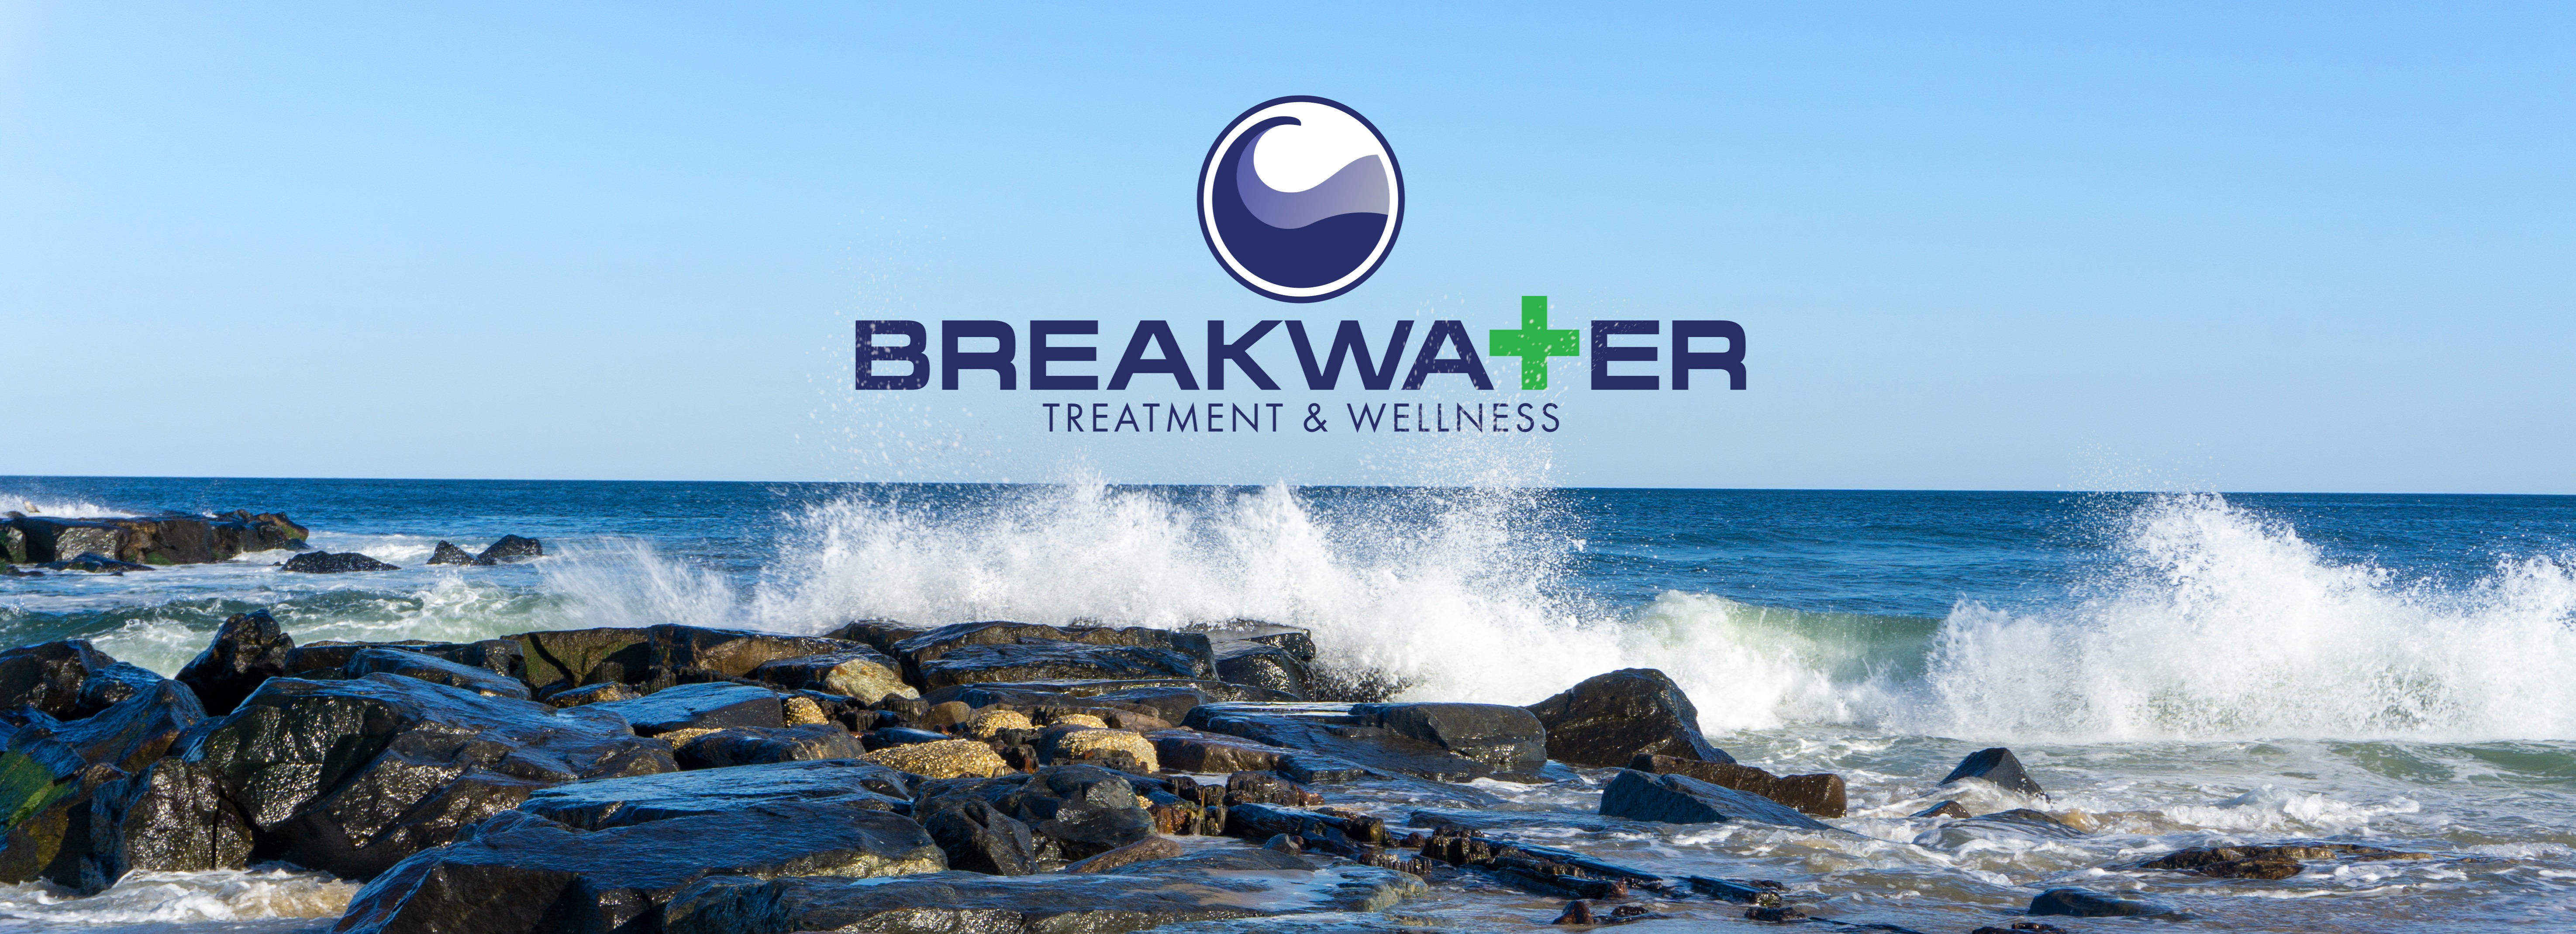 breakwater atc nj dispensary prices